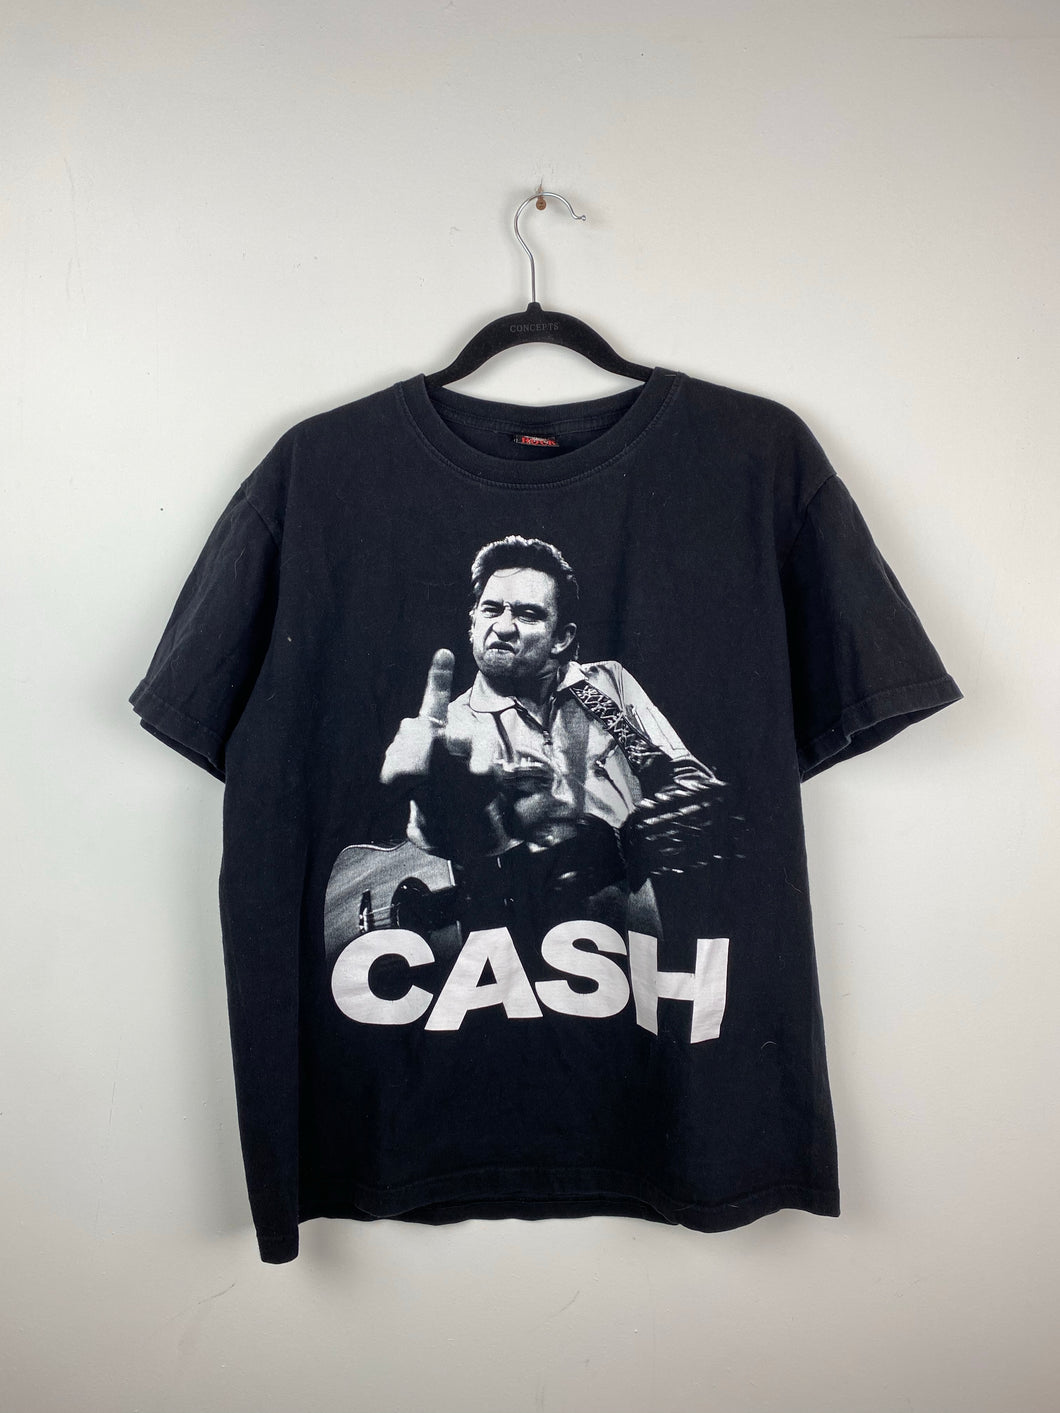 Cash t shirt